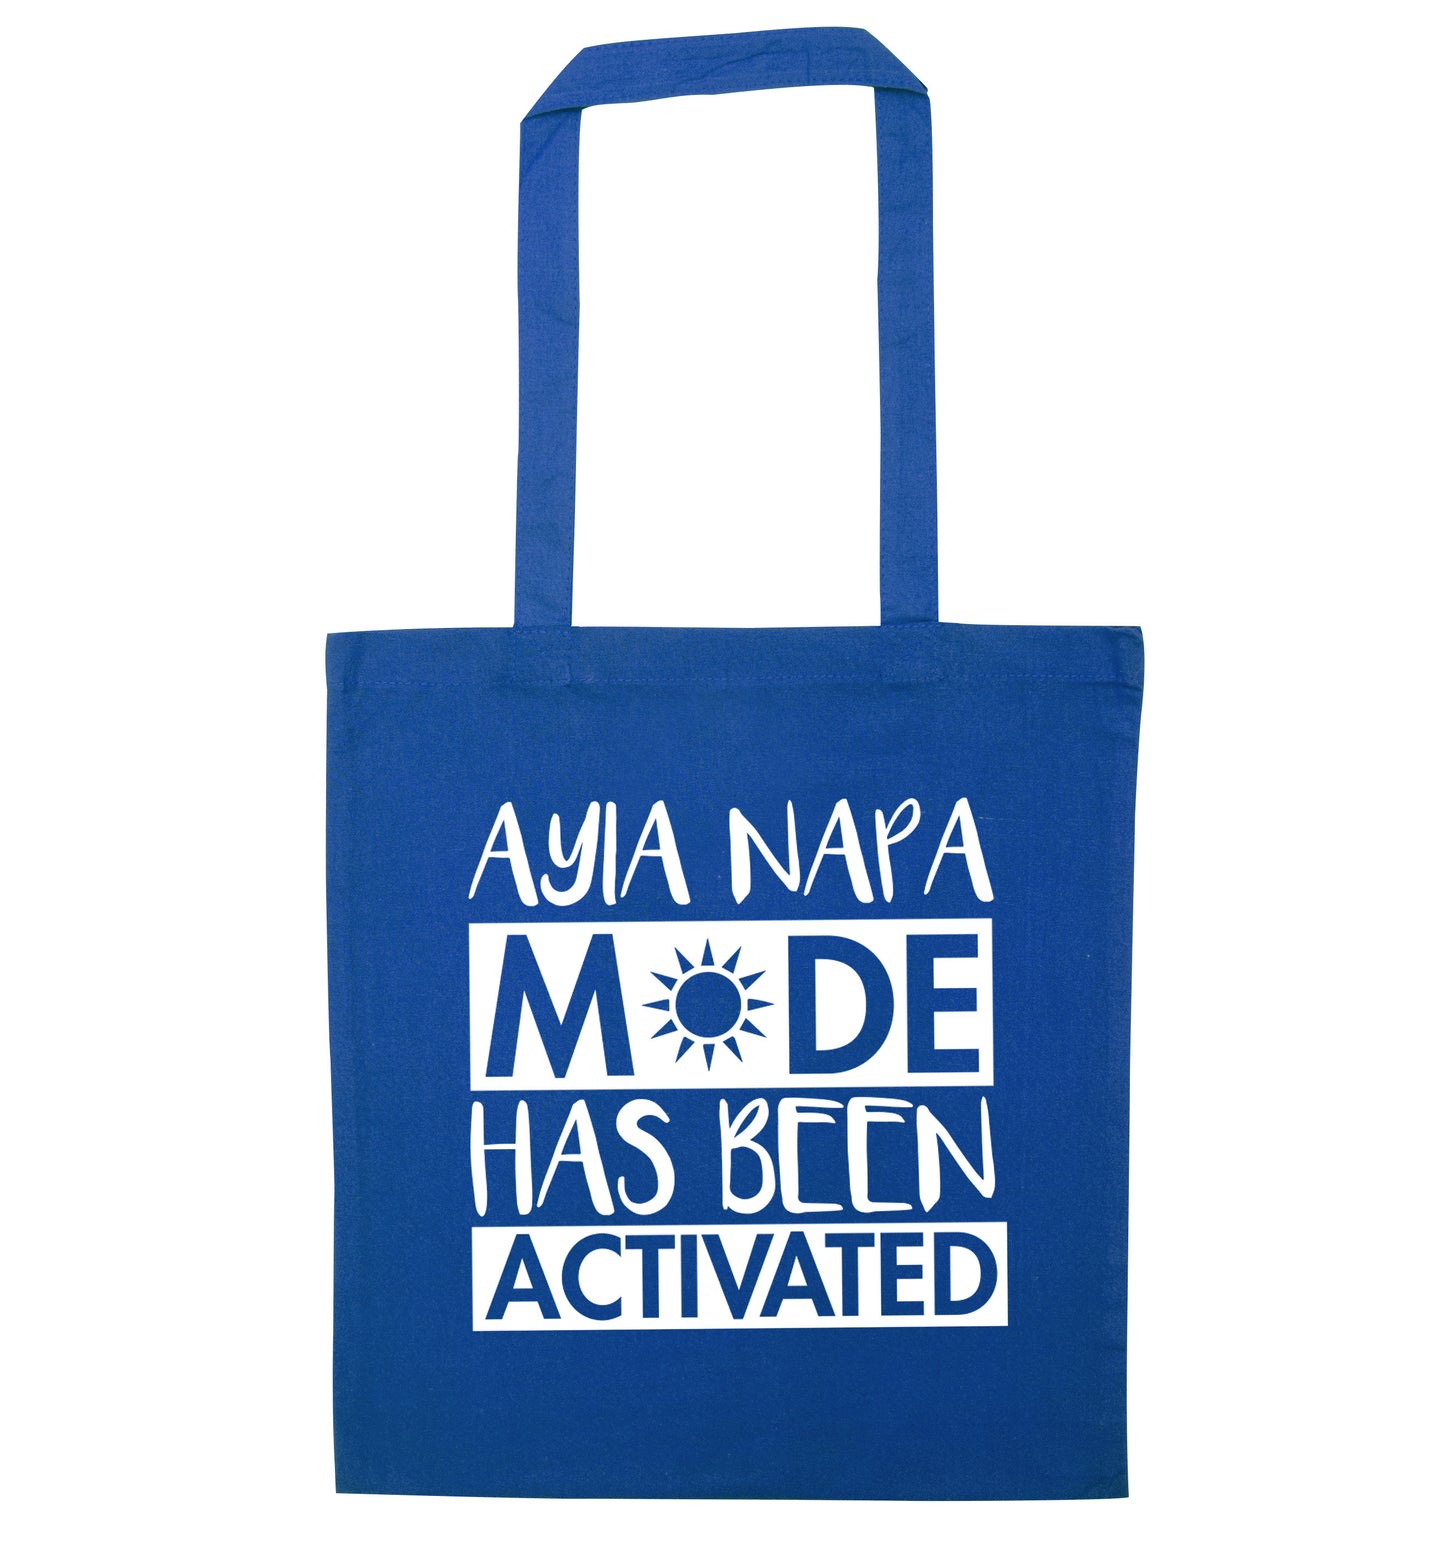 Aiya Napa mode has been activated blue tote bag